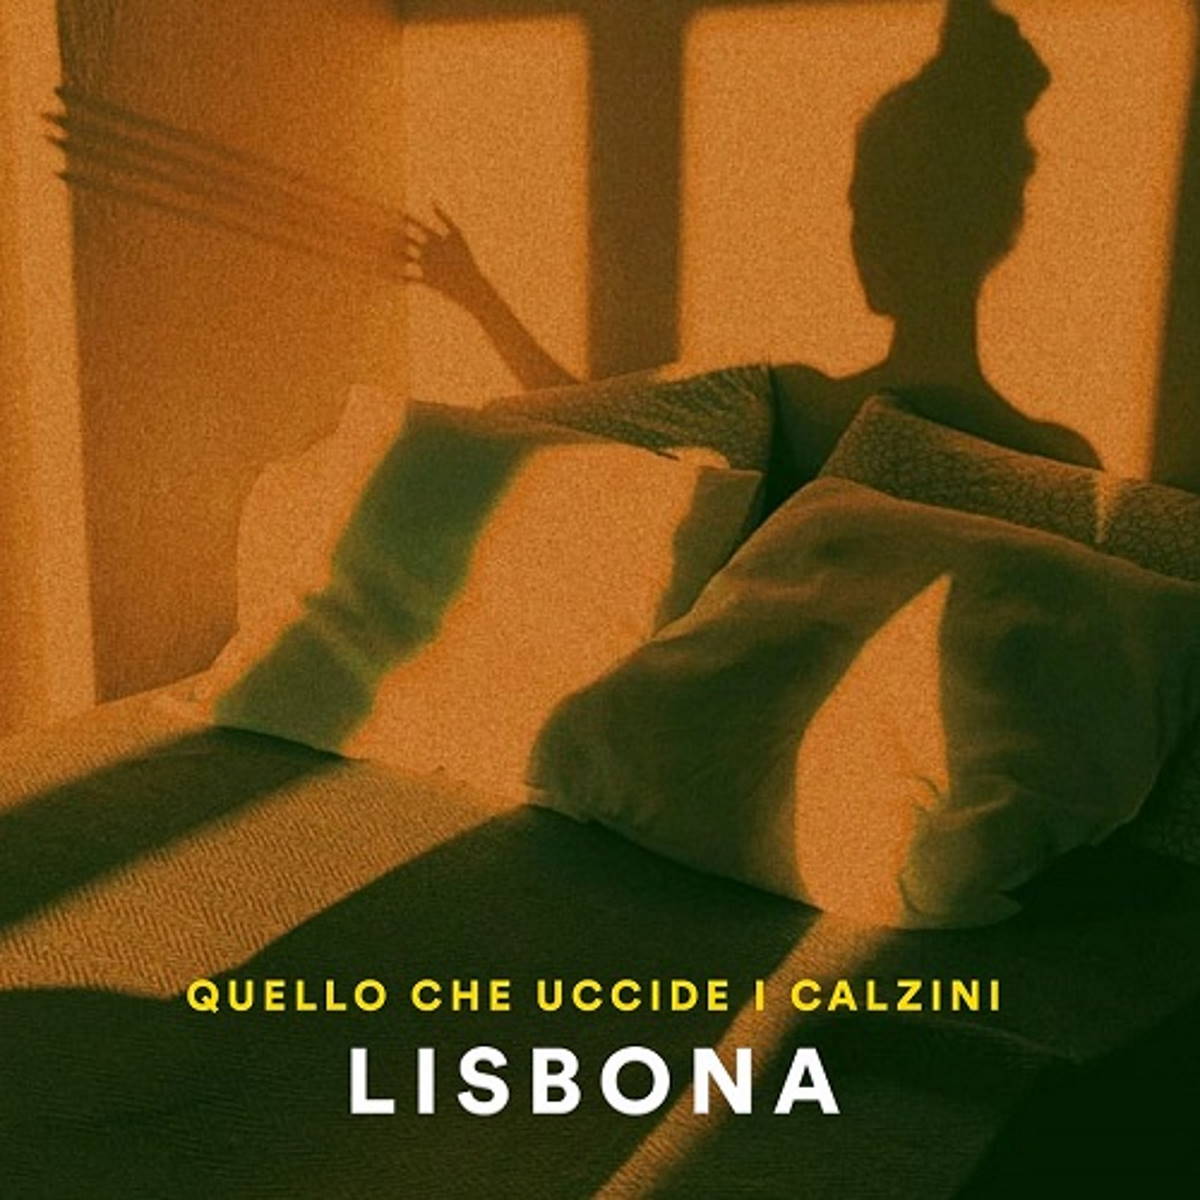 LISBONA: “QUELLO CHE UCCIDE I CALZINI” è il nuovo singolo del cantautore torinese